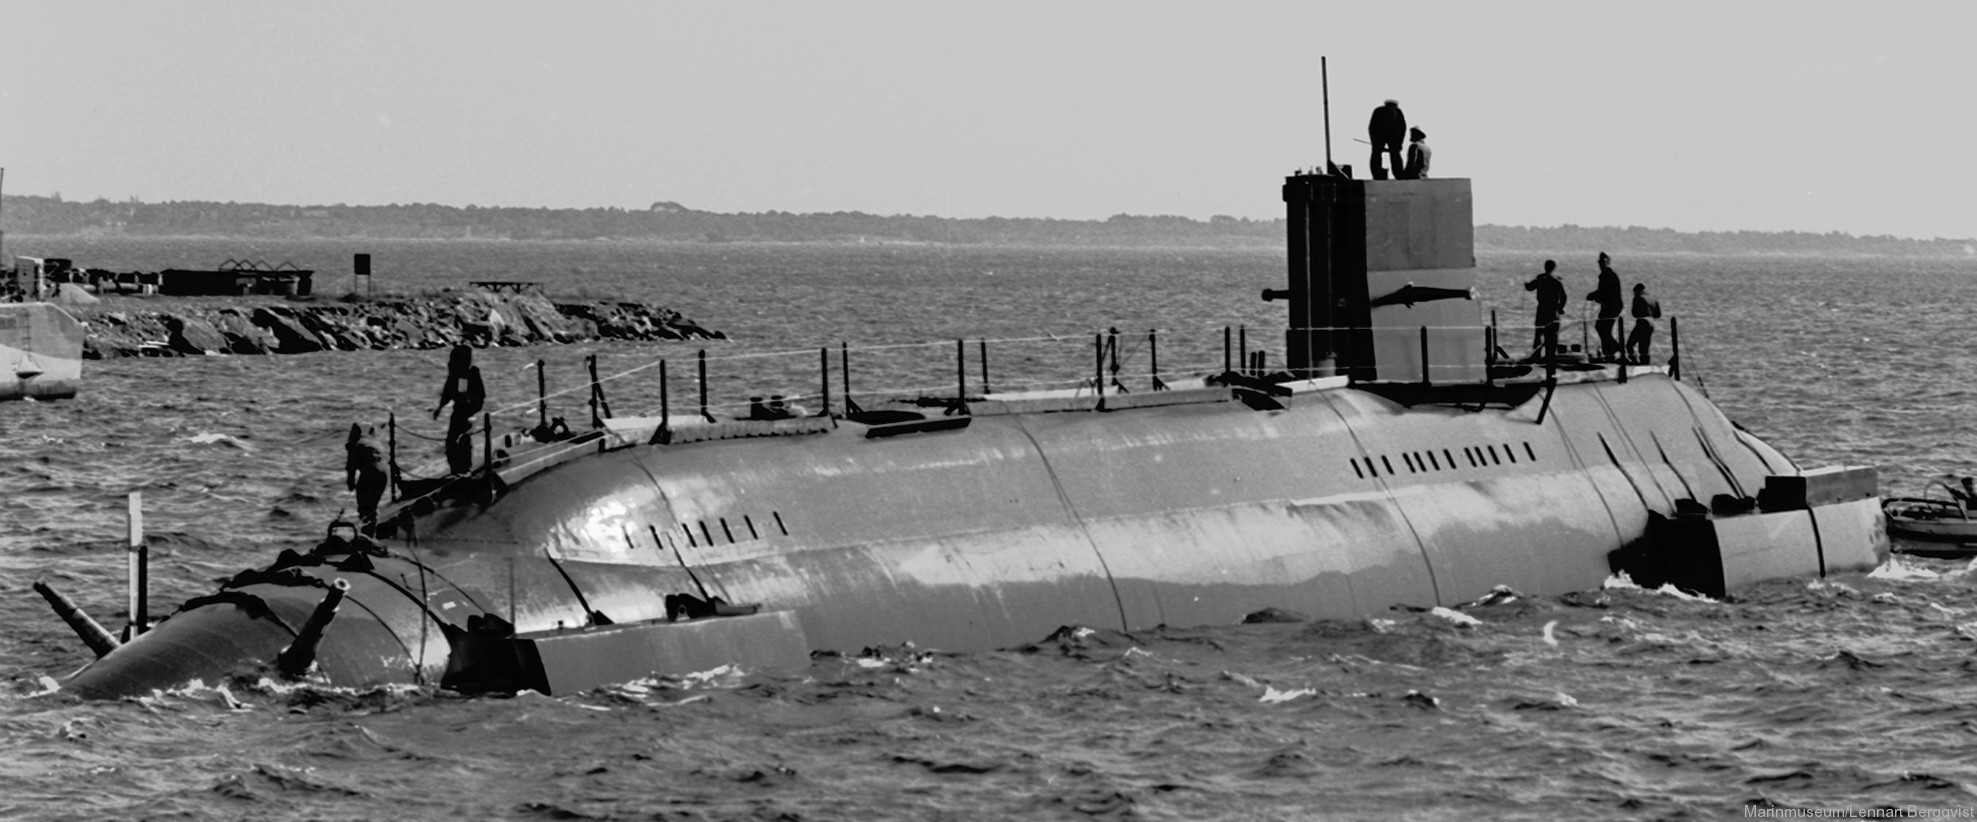 hswms hms sjöhästen shä sjöormen a11 class submarine ssk swedish navy svenska marinen försvarsmakten 12